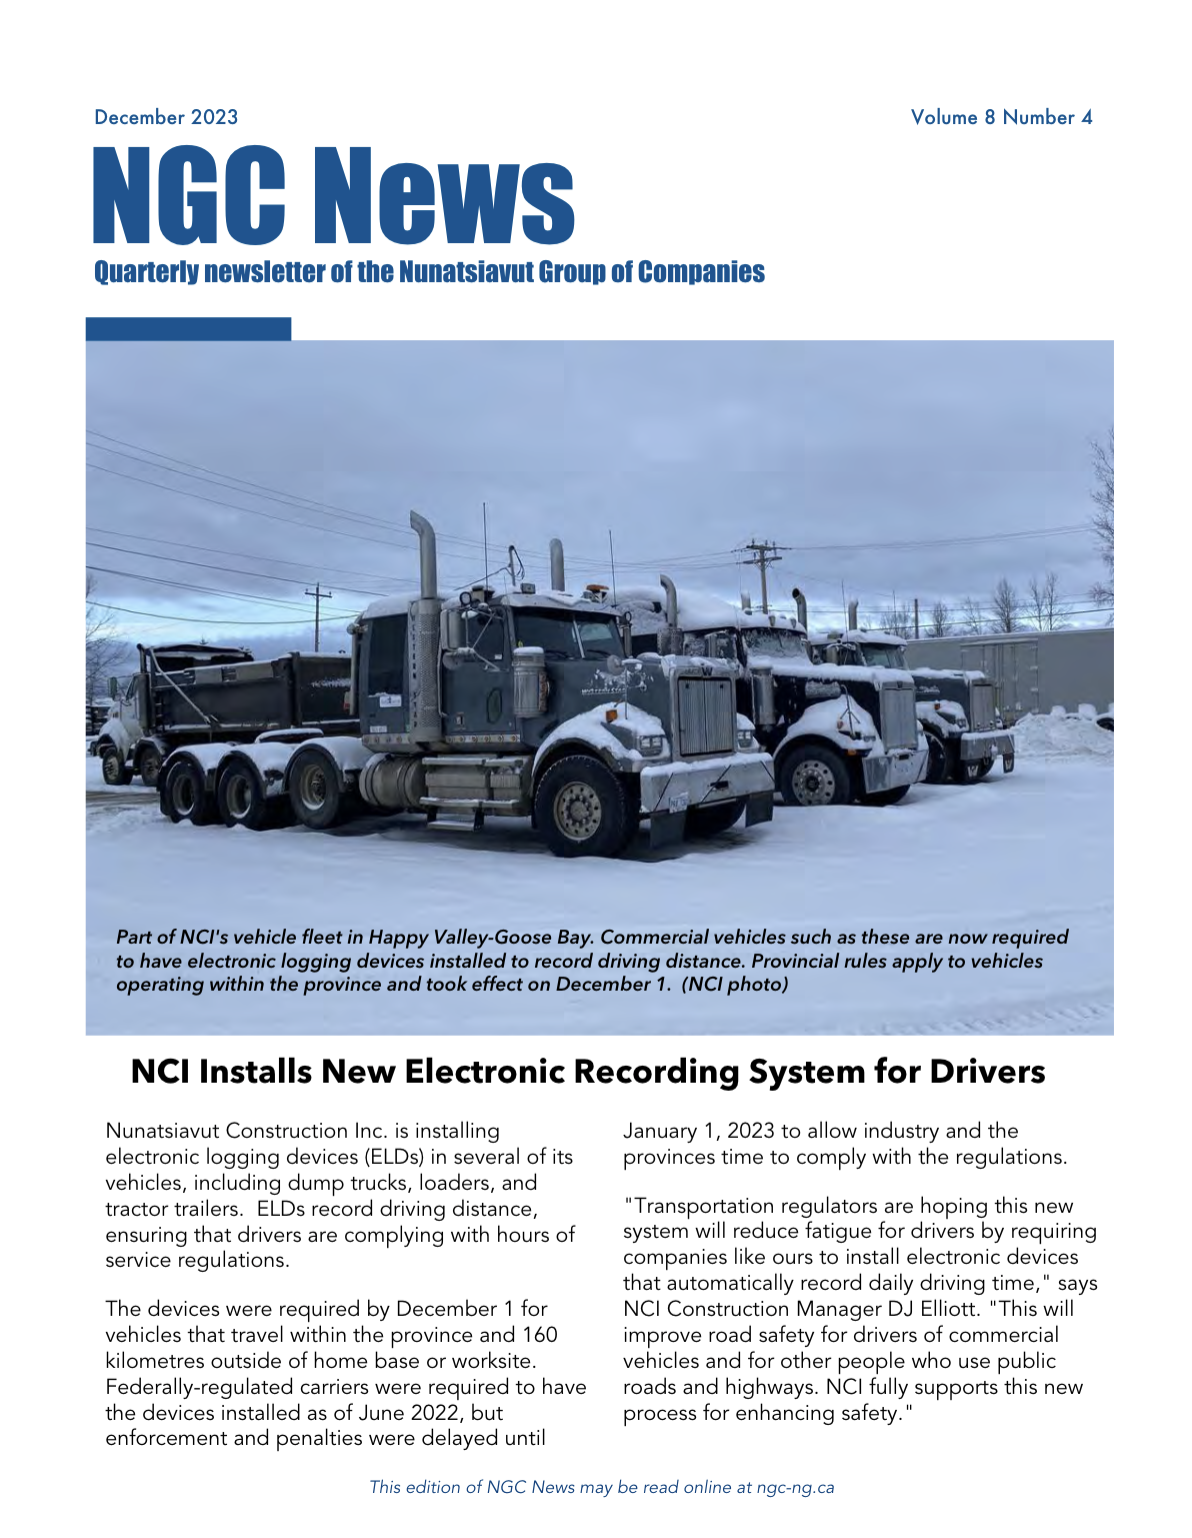 December Newsletter NGC